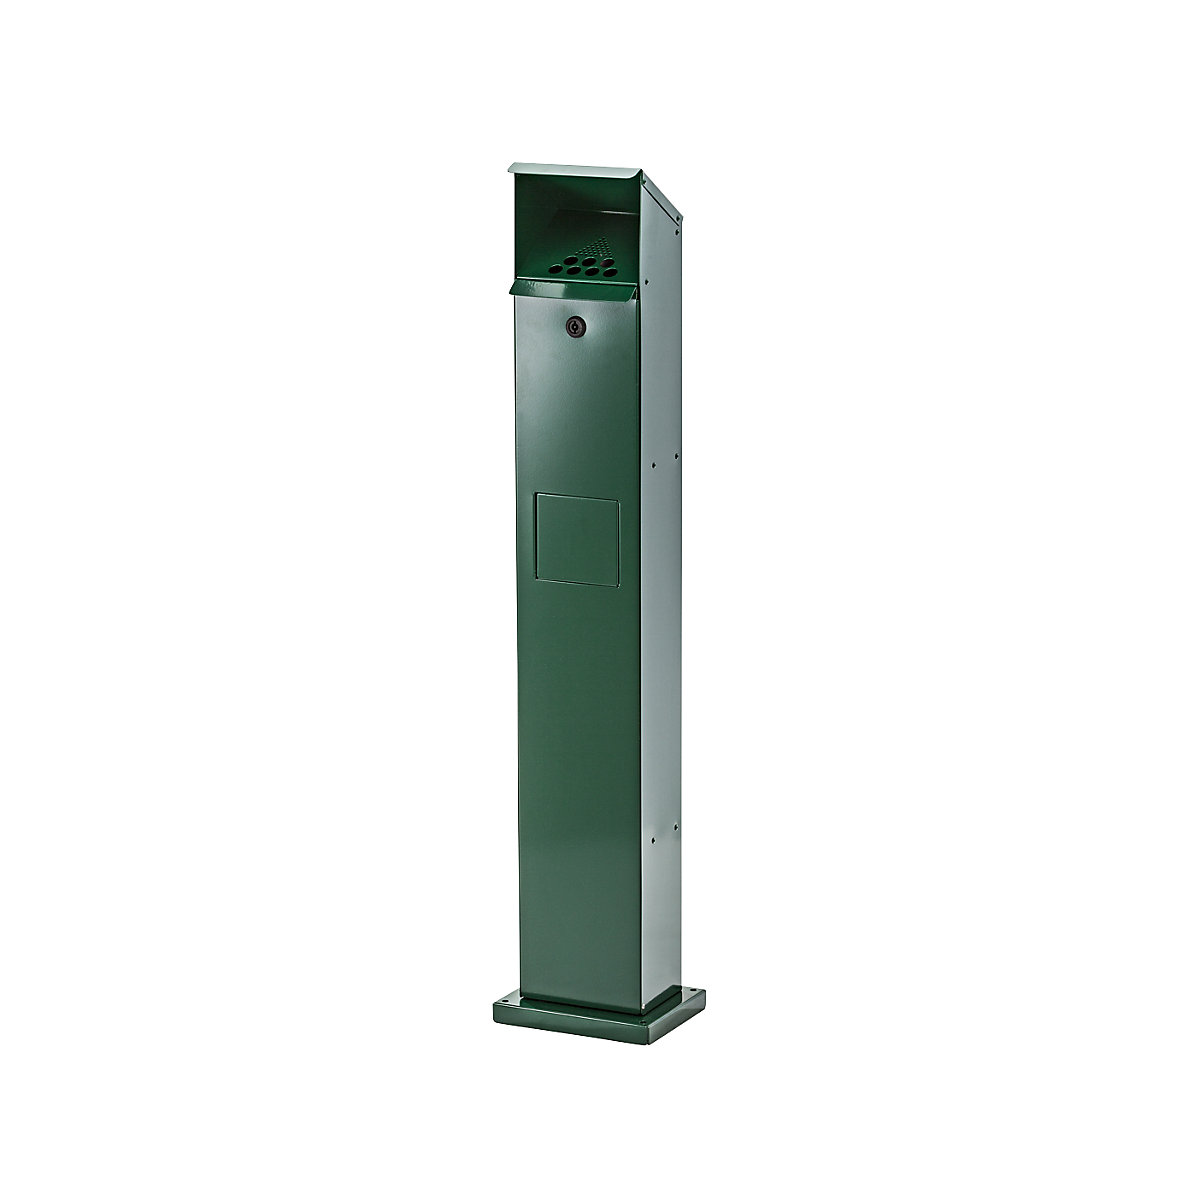 Cendrier colonne combiné – VAR, capacité 5 l, l x h x p 180 x 1150 x 150 mm, vert mousse-4